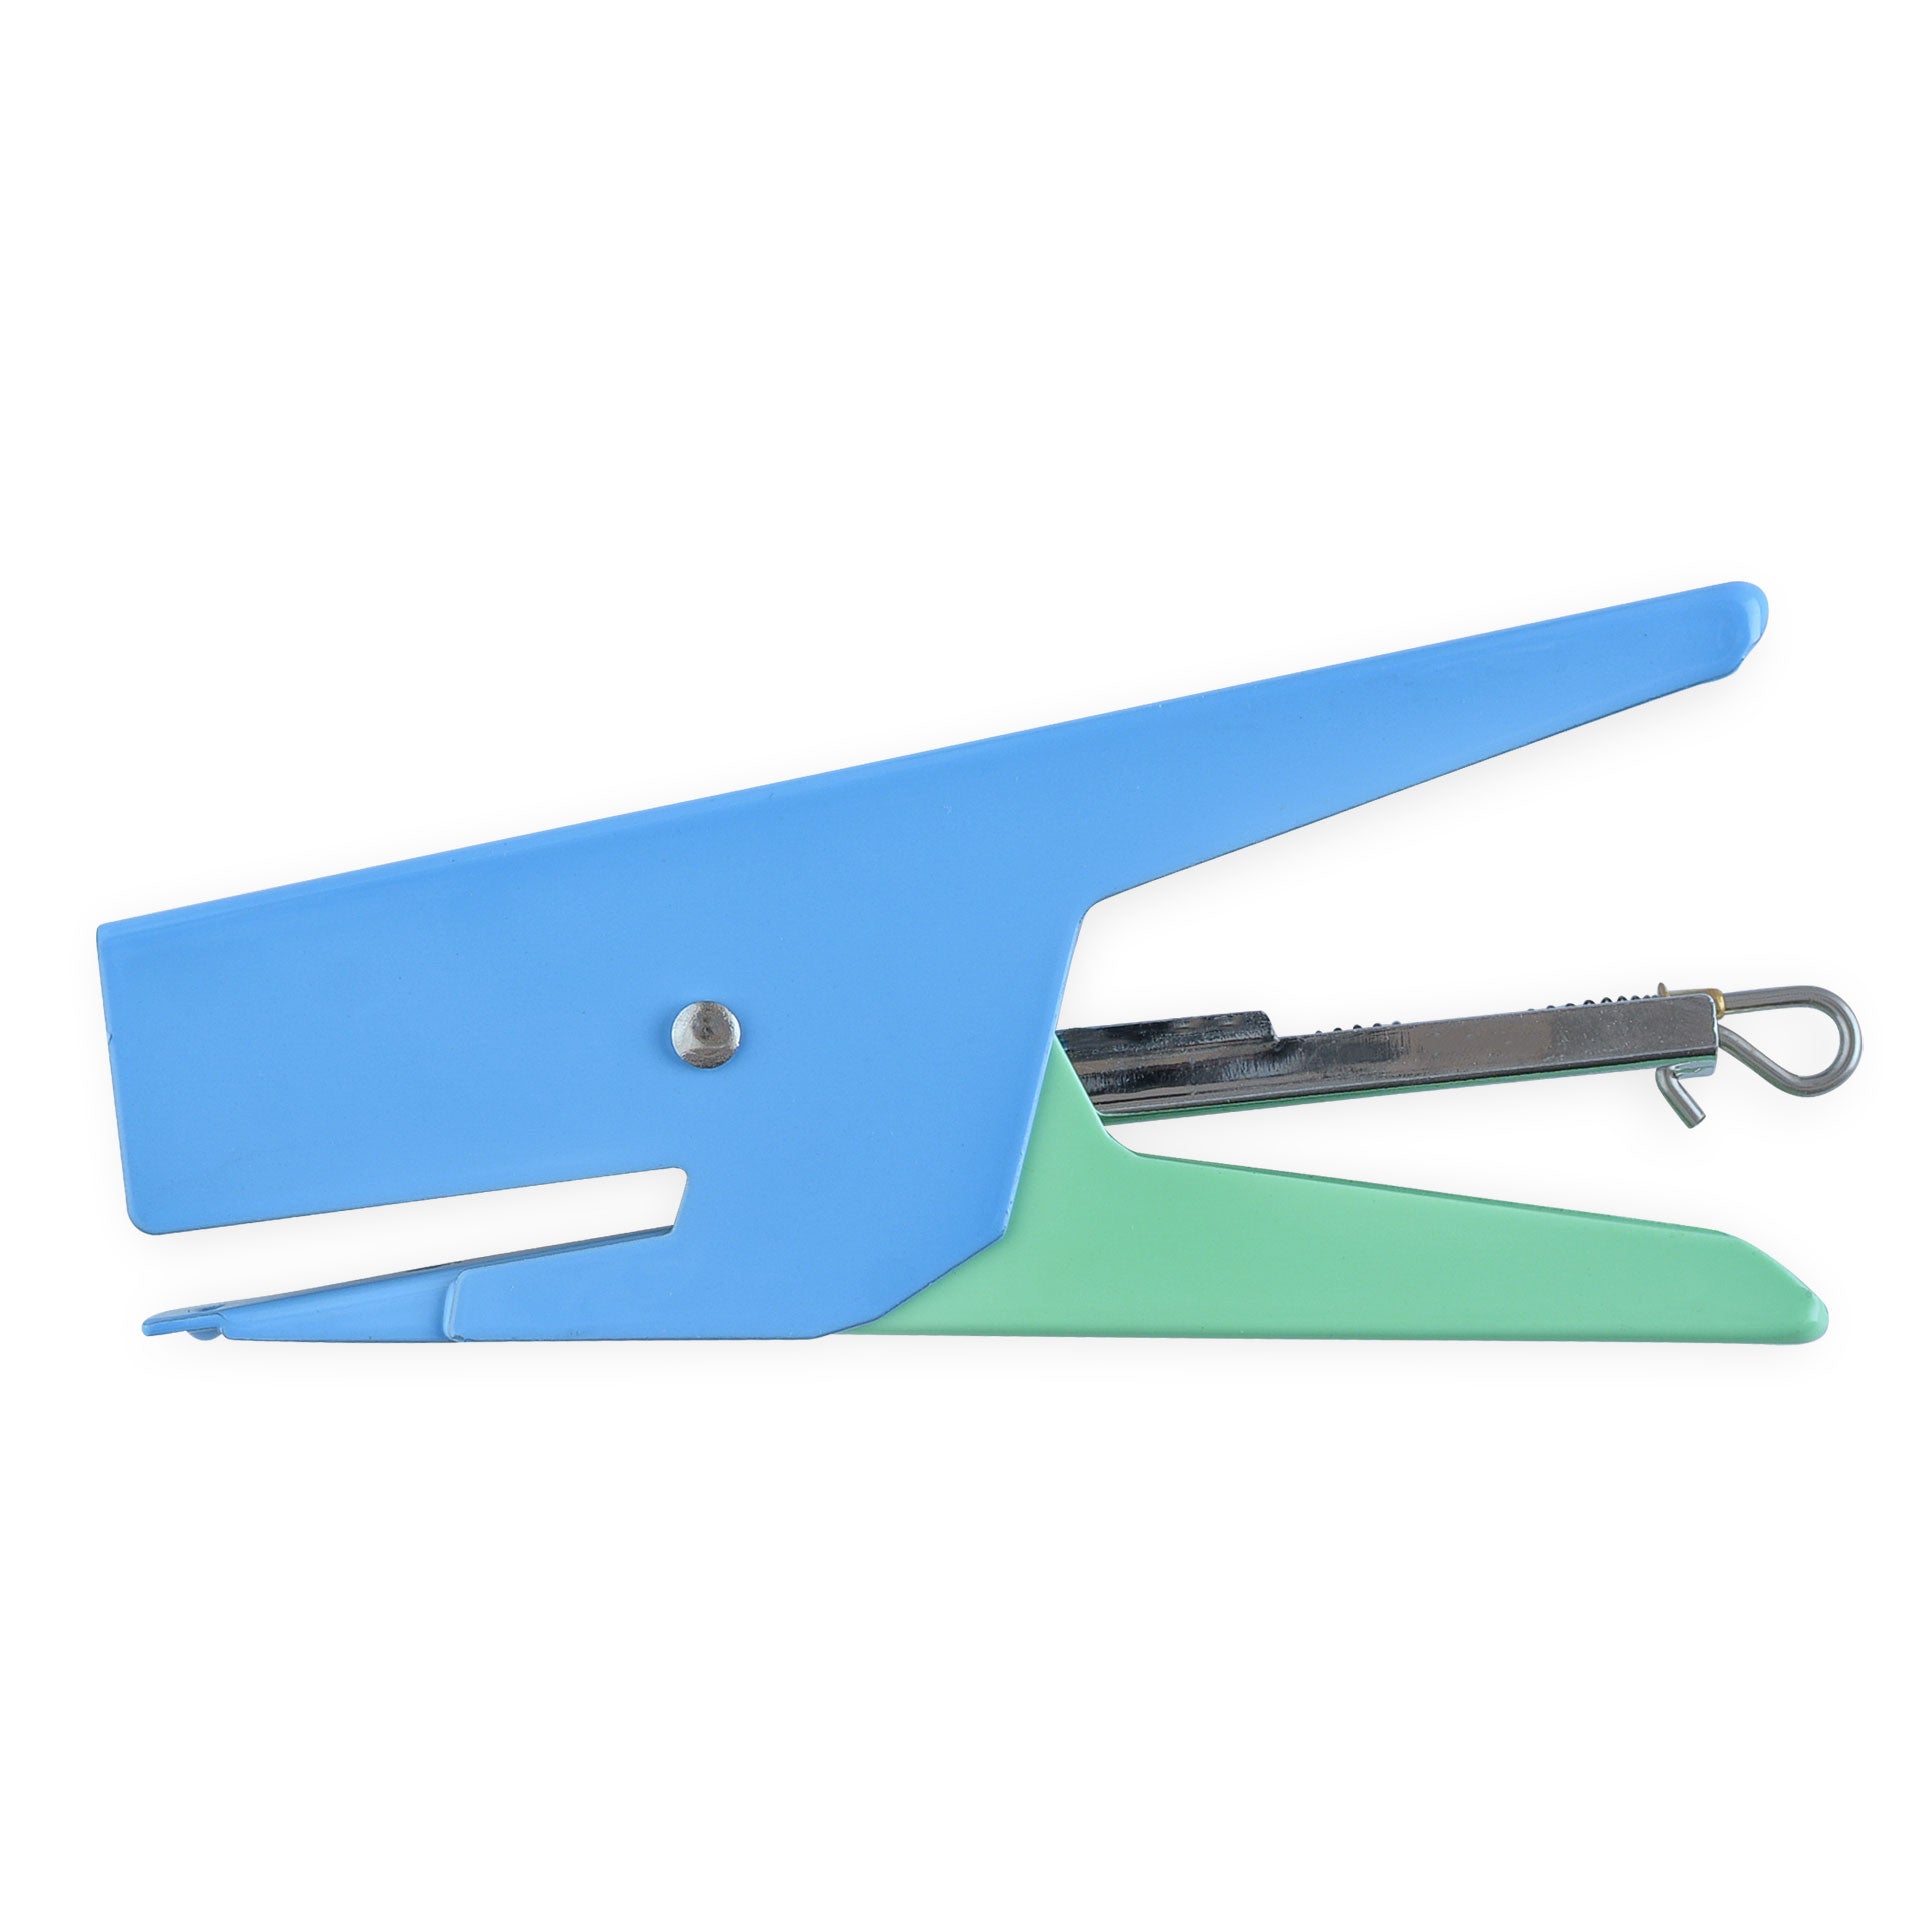 Papier Tigre Blue & Green Stapler SAMPLE SALE 